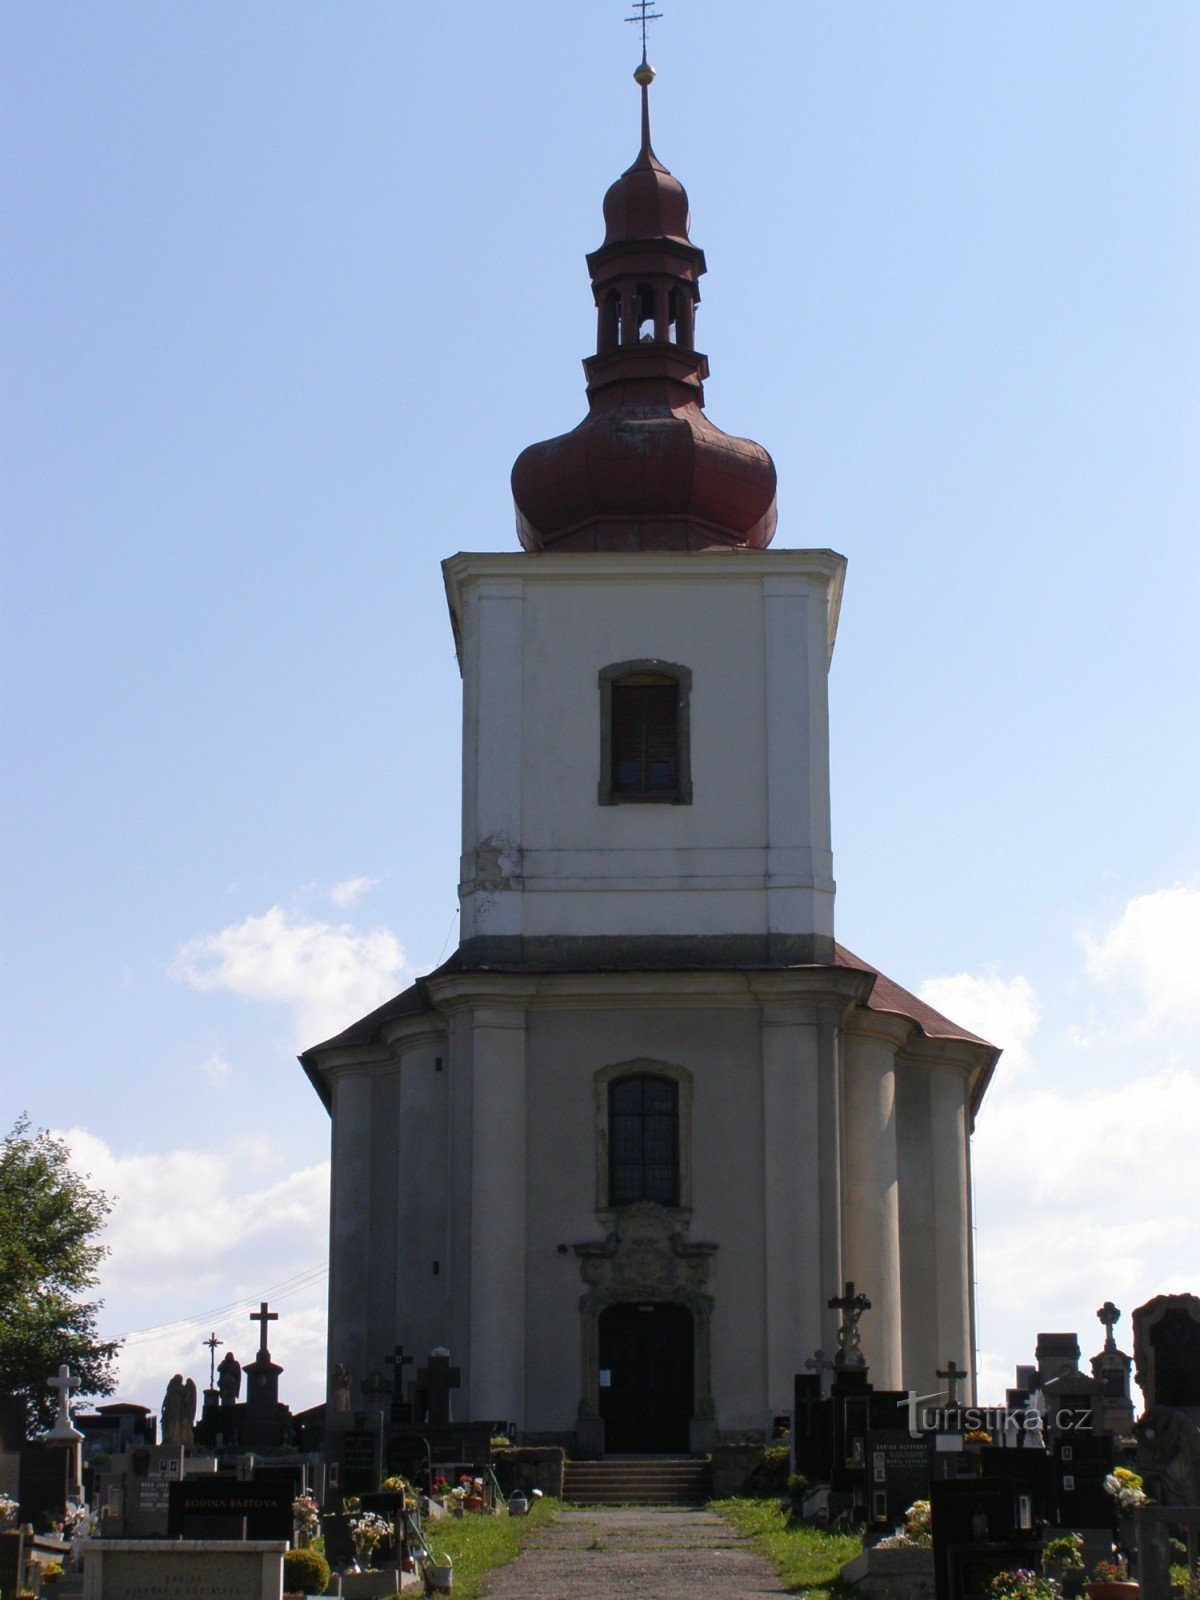 Javornice - Szent István-templom. György